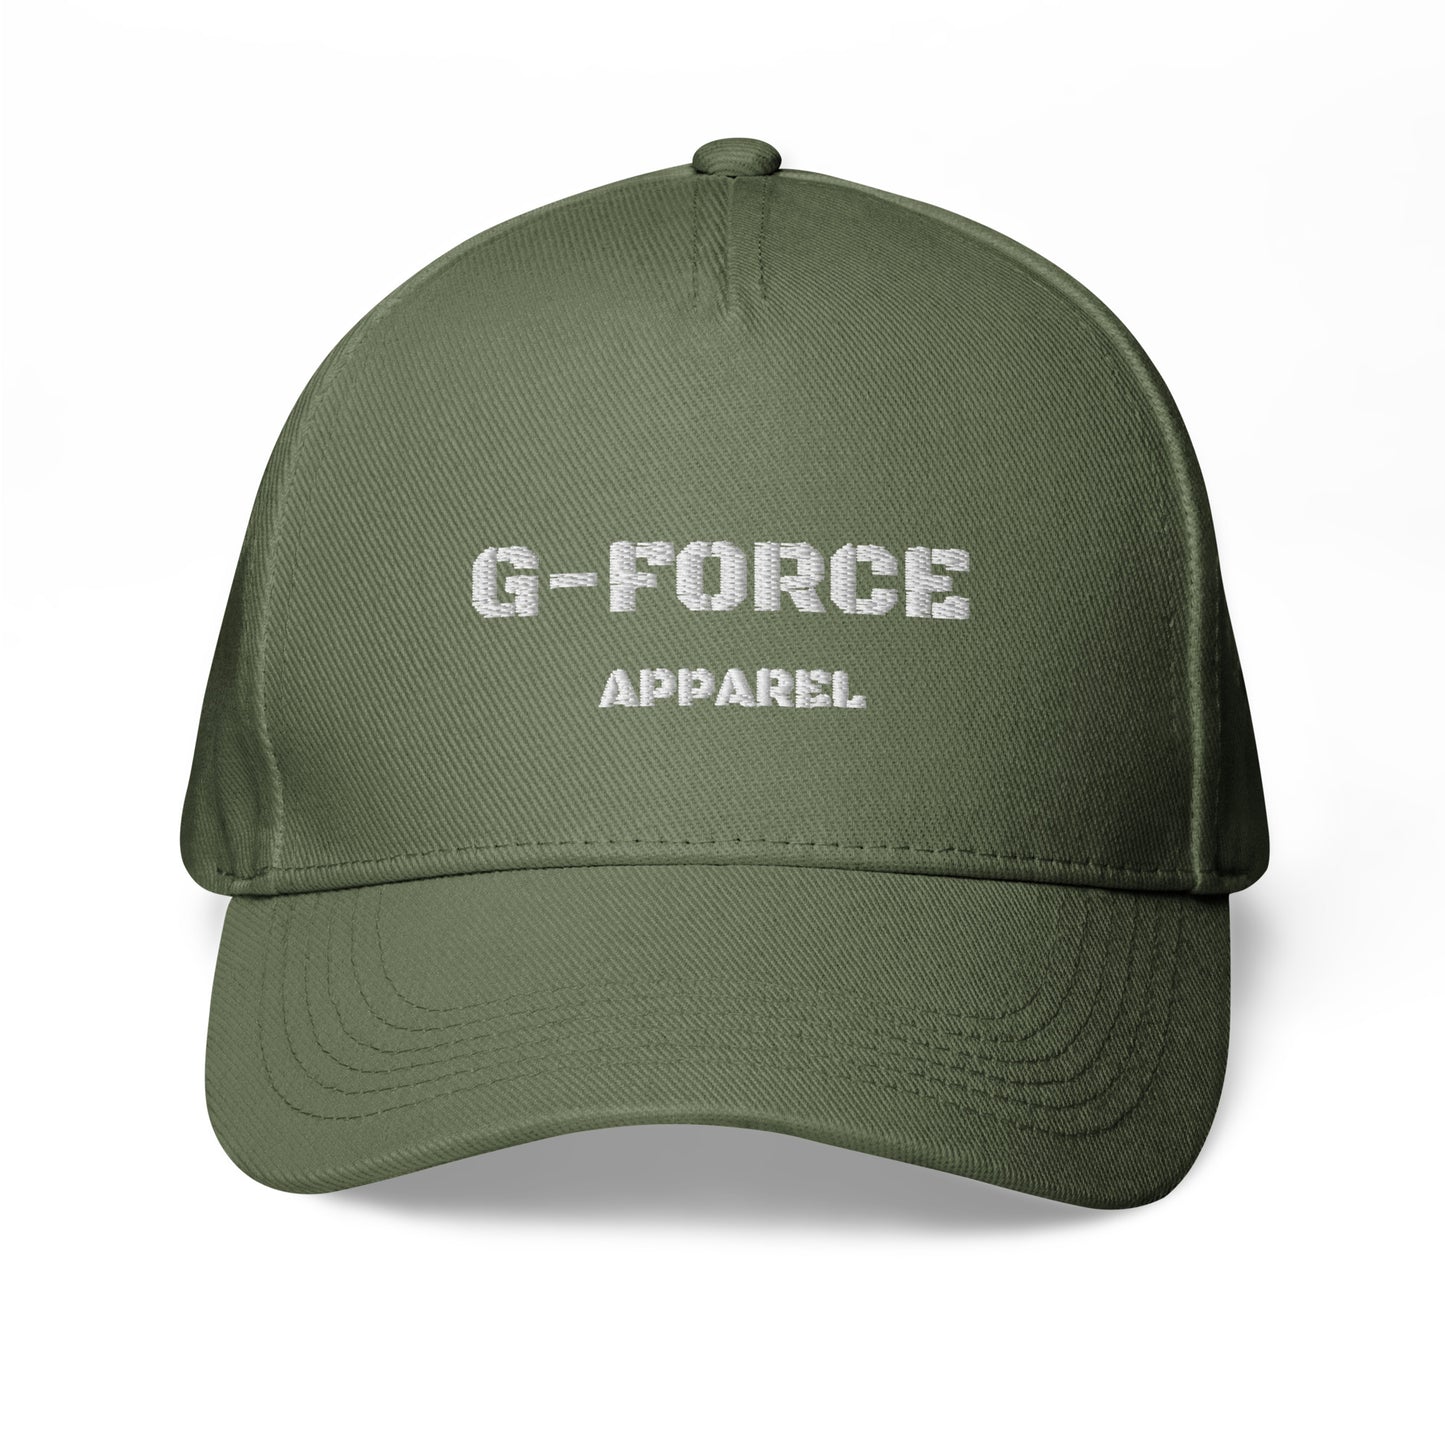 G-FORCE APPAREL Block baseball cap